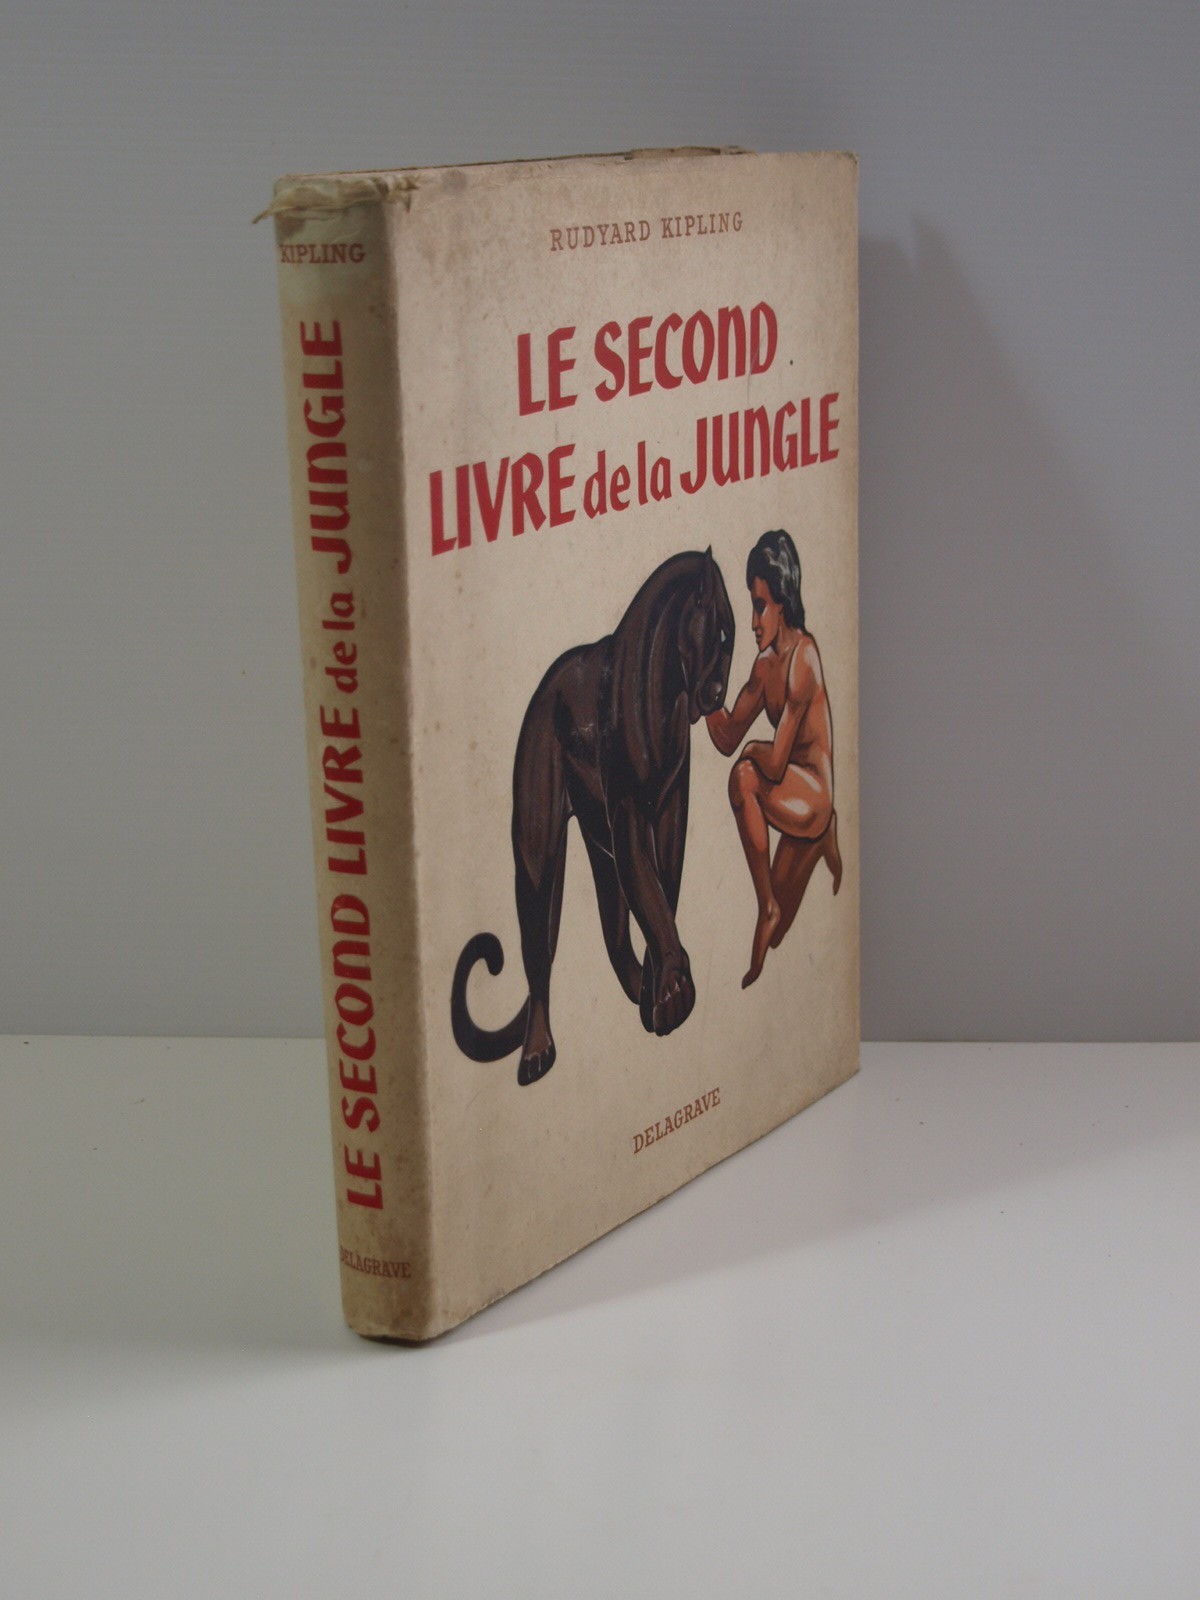 Kipling Rudyard  : Le second livre de la jungle